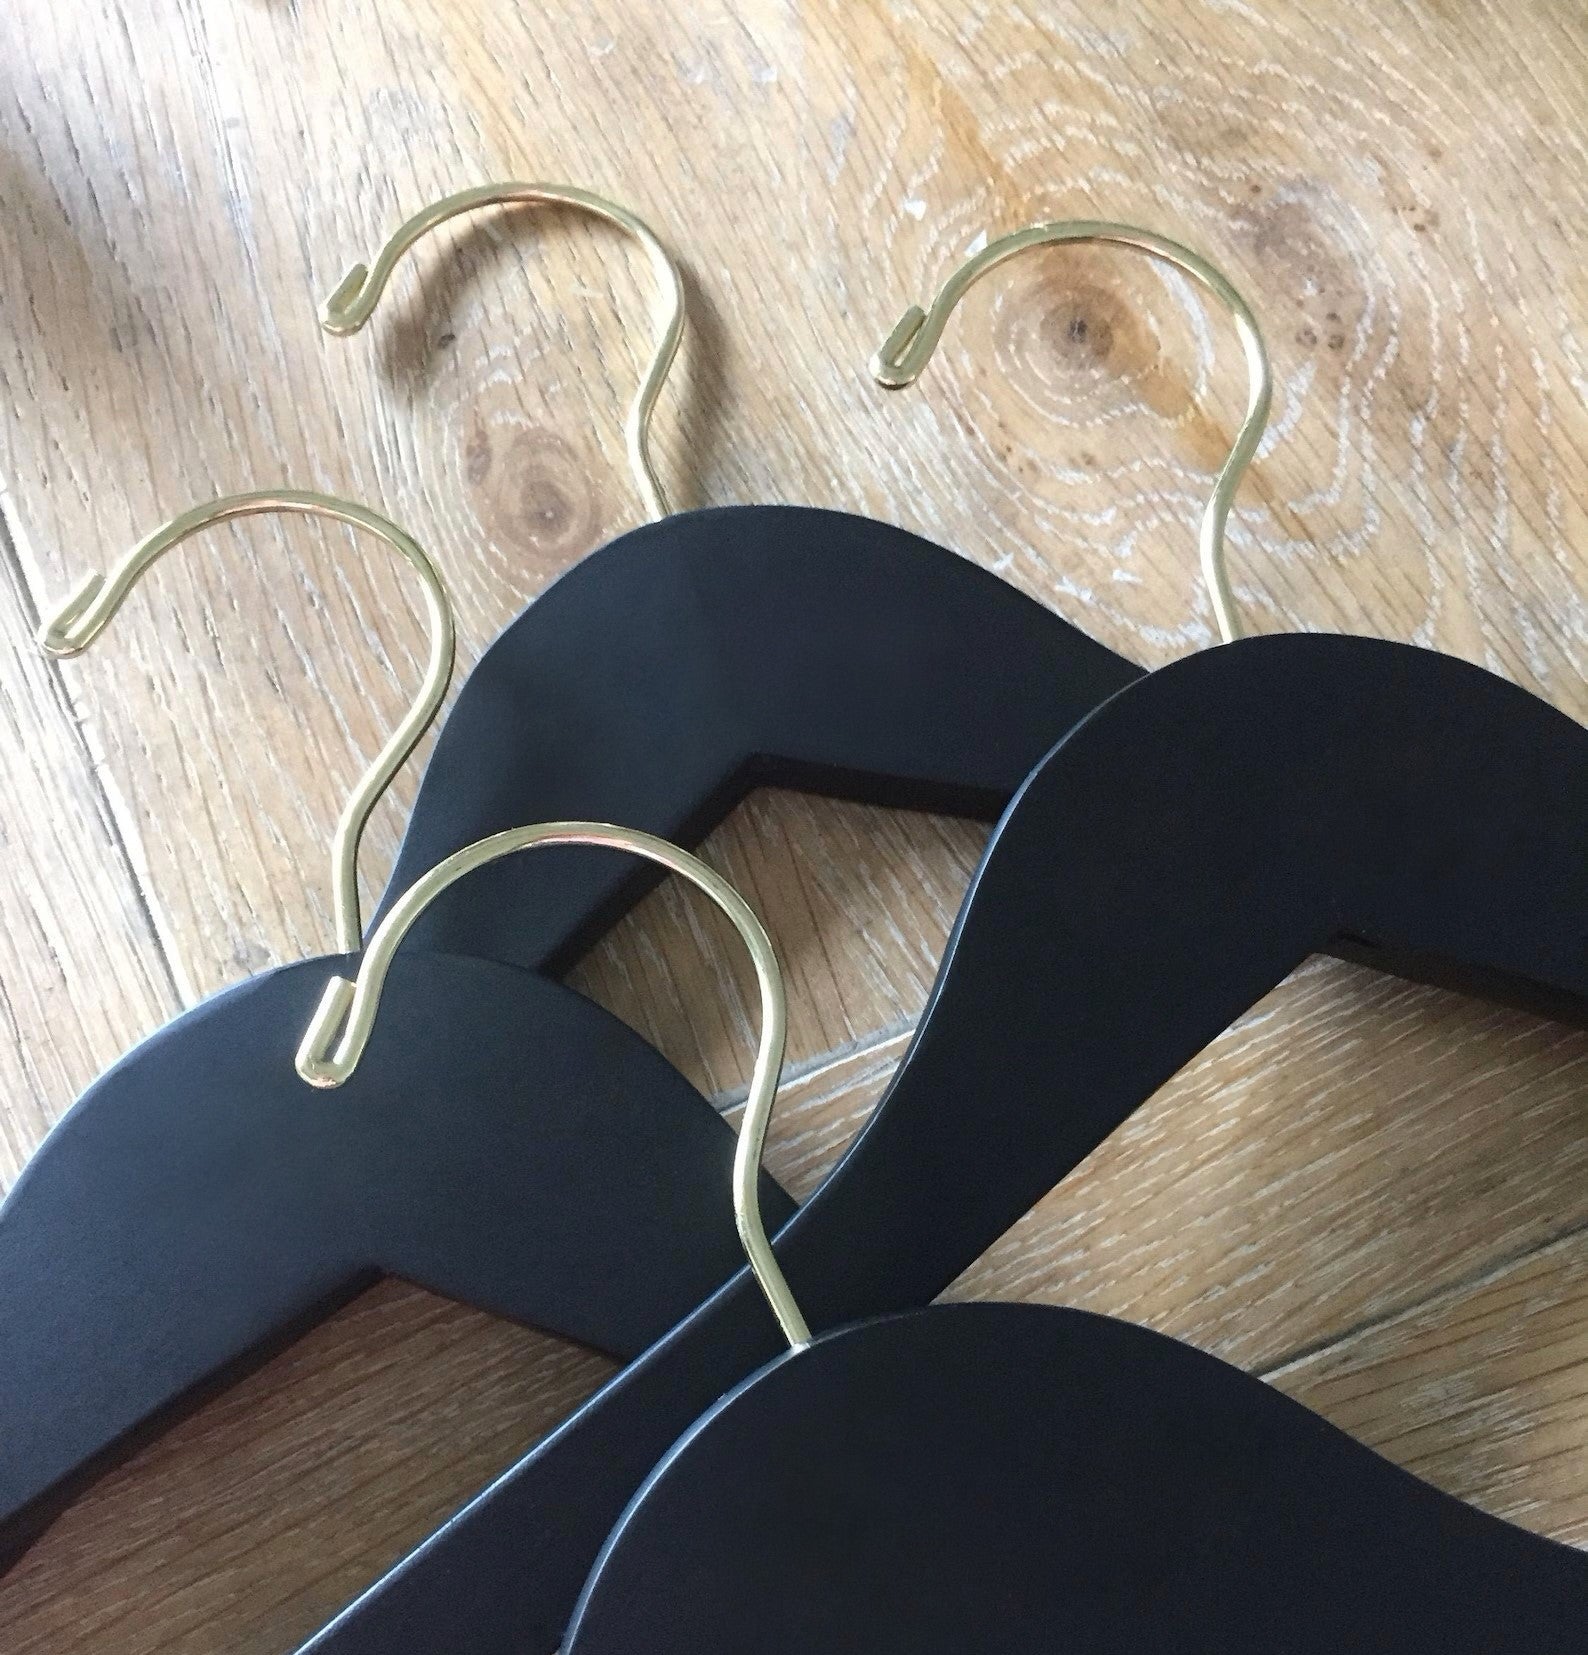 Four Matte Black Wood Adult Flat Suit Hangers with gold hooks for custom bridal hanger designers lying on wood floor #hook-color_gold-hook